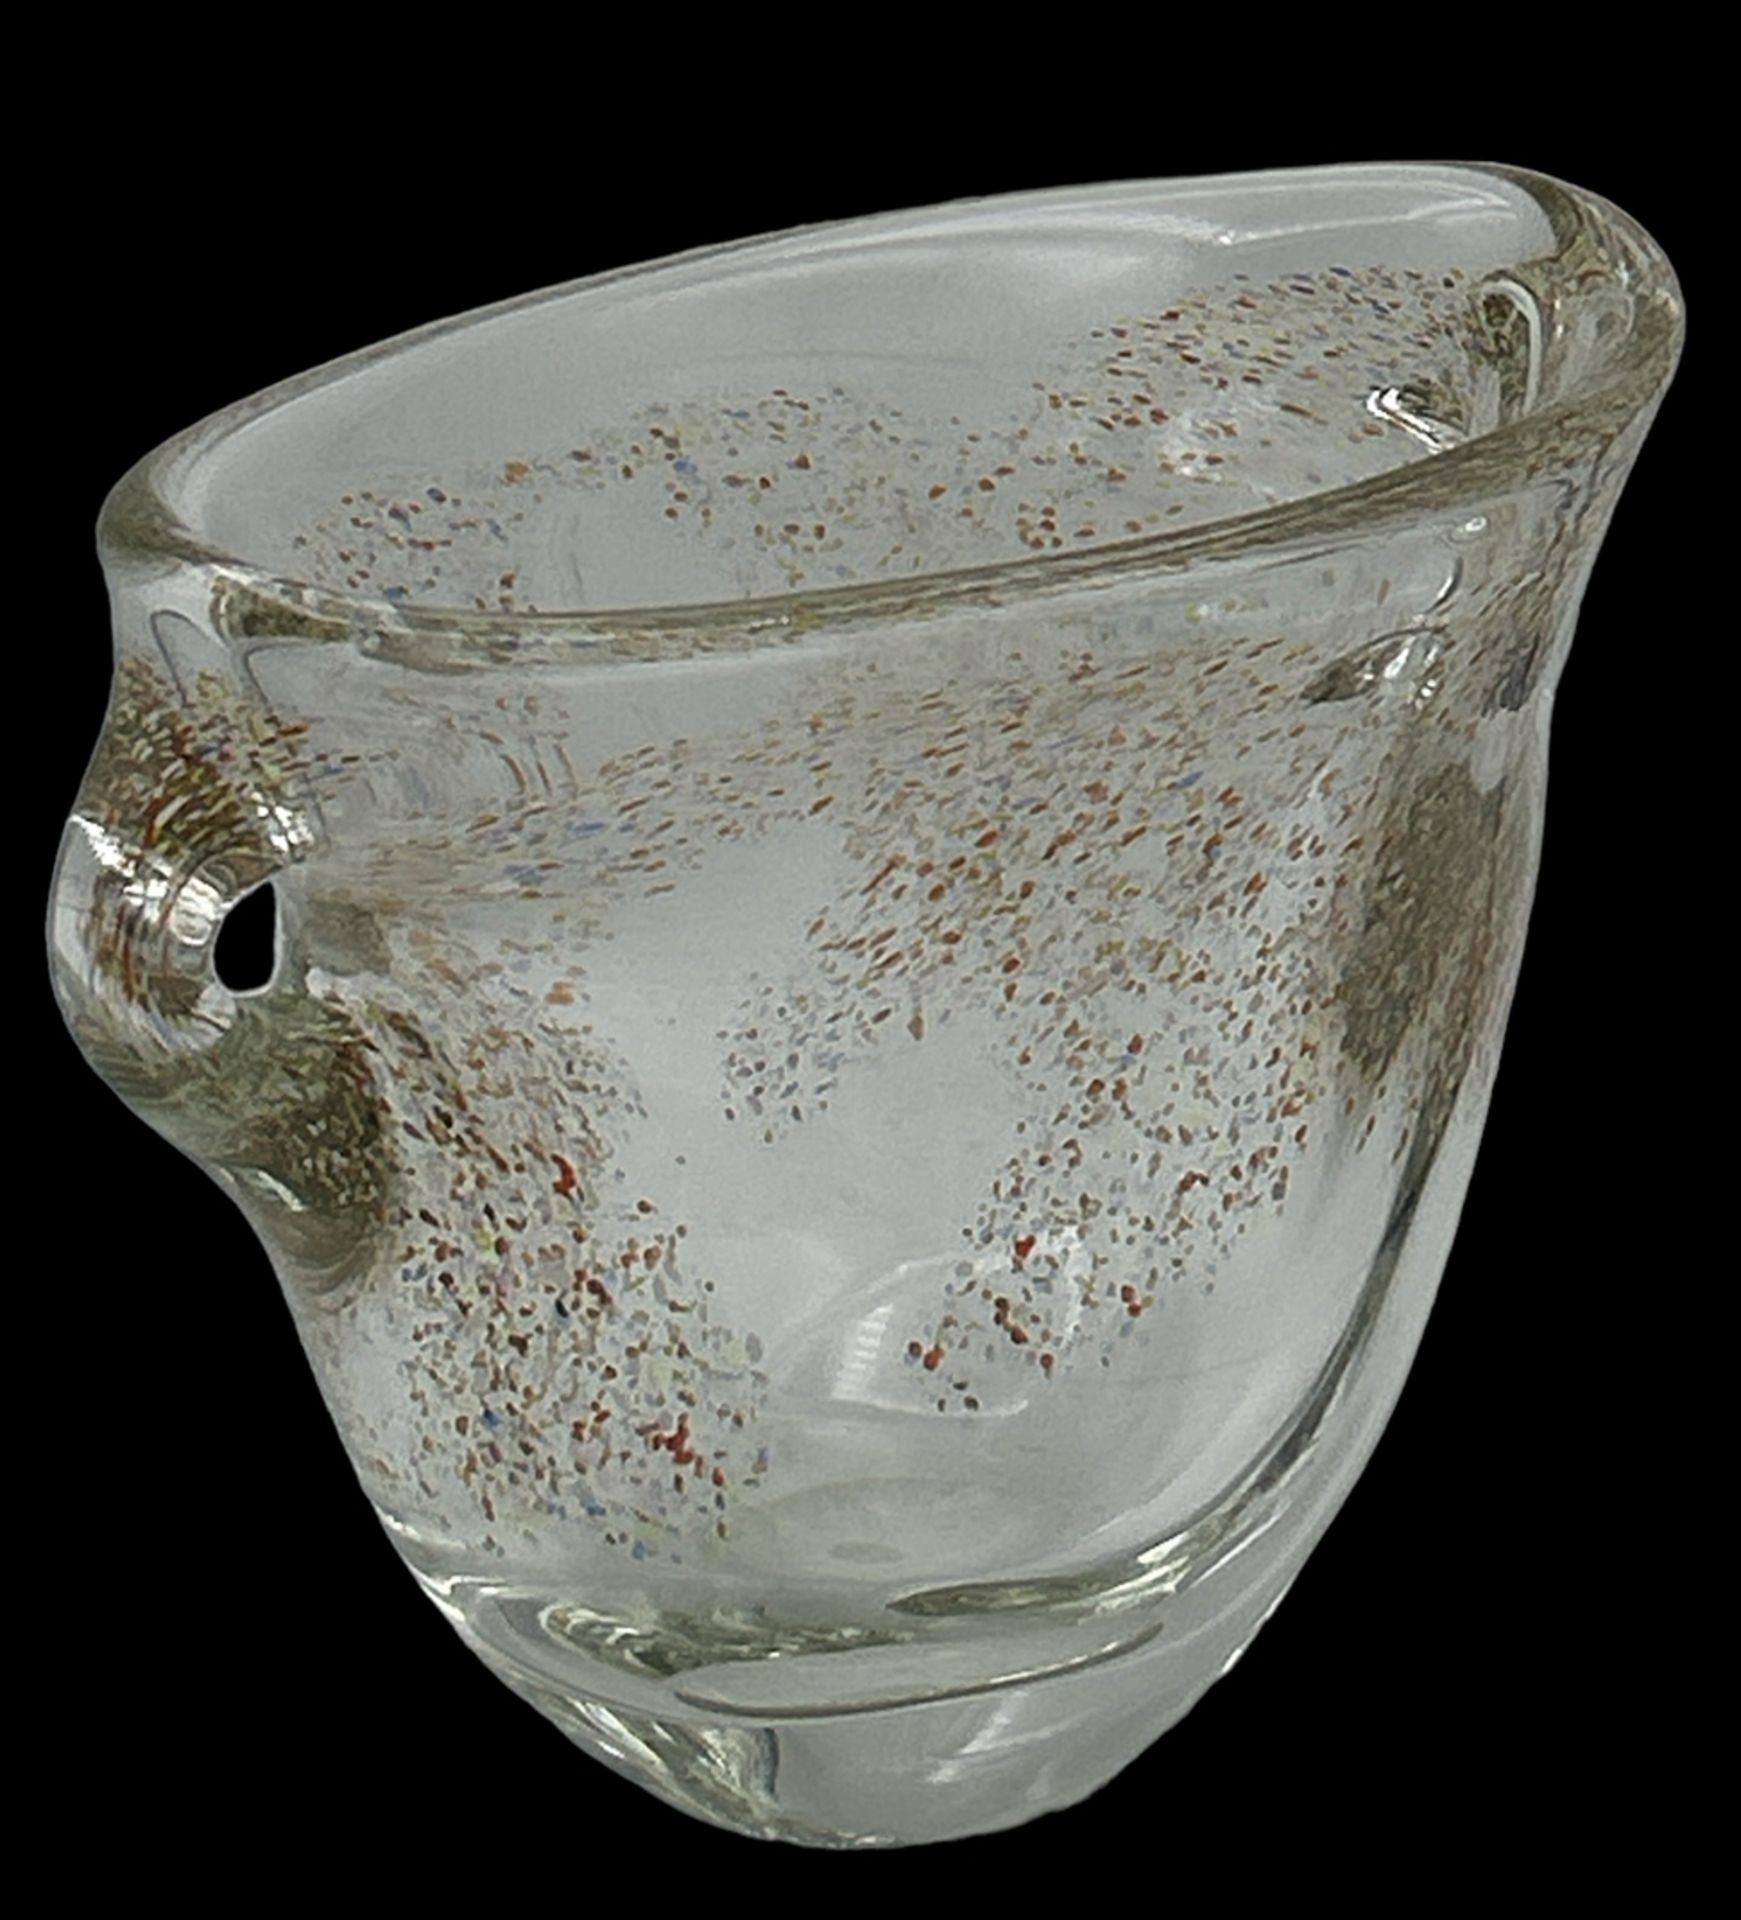 grosse, schwere ovoide Kunstglas-Vase mit bunten Einschmelzungen, H-18 cm, 23x12 cm - Image 2 of 3